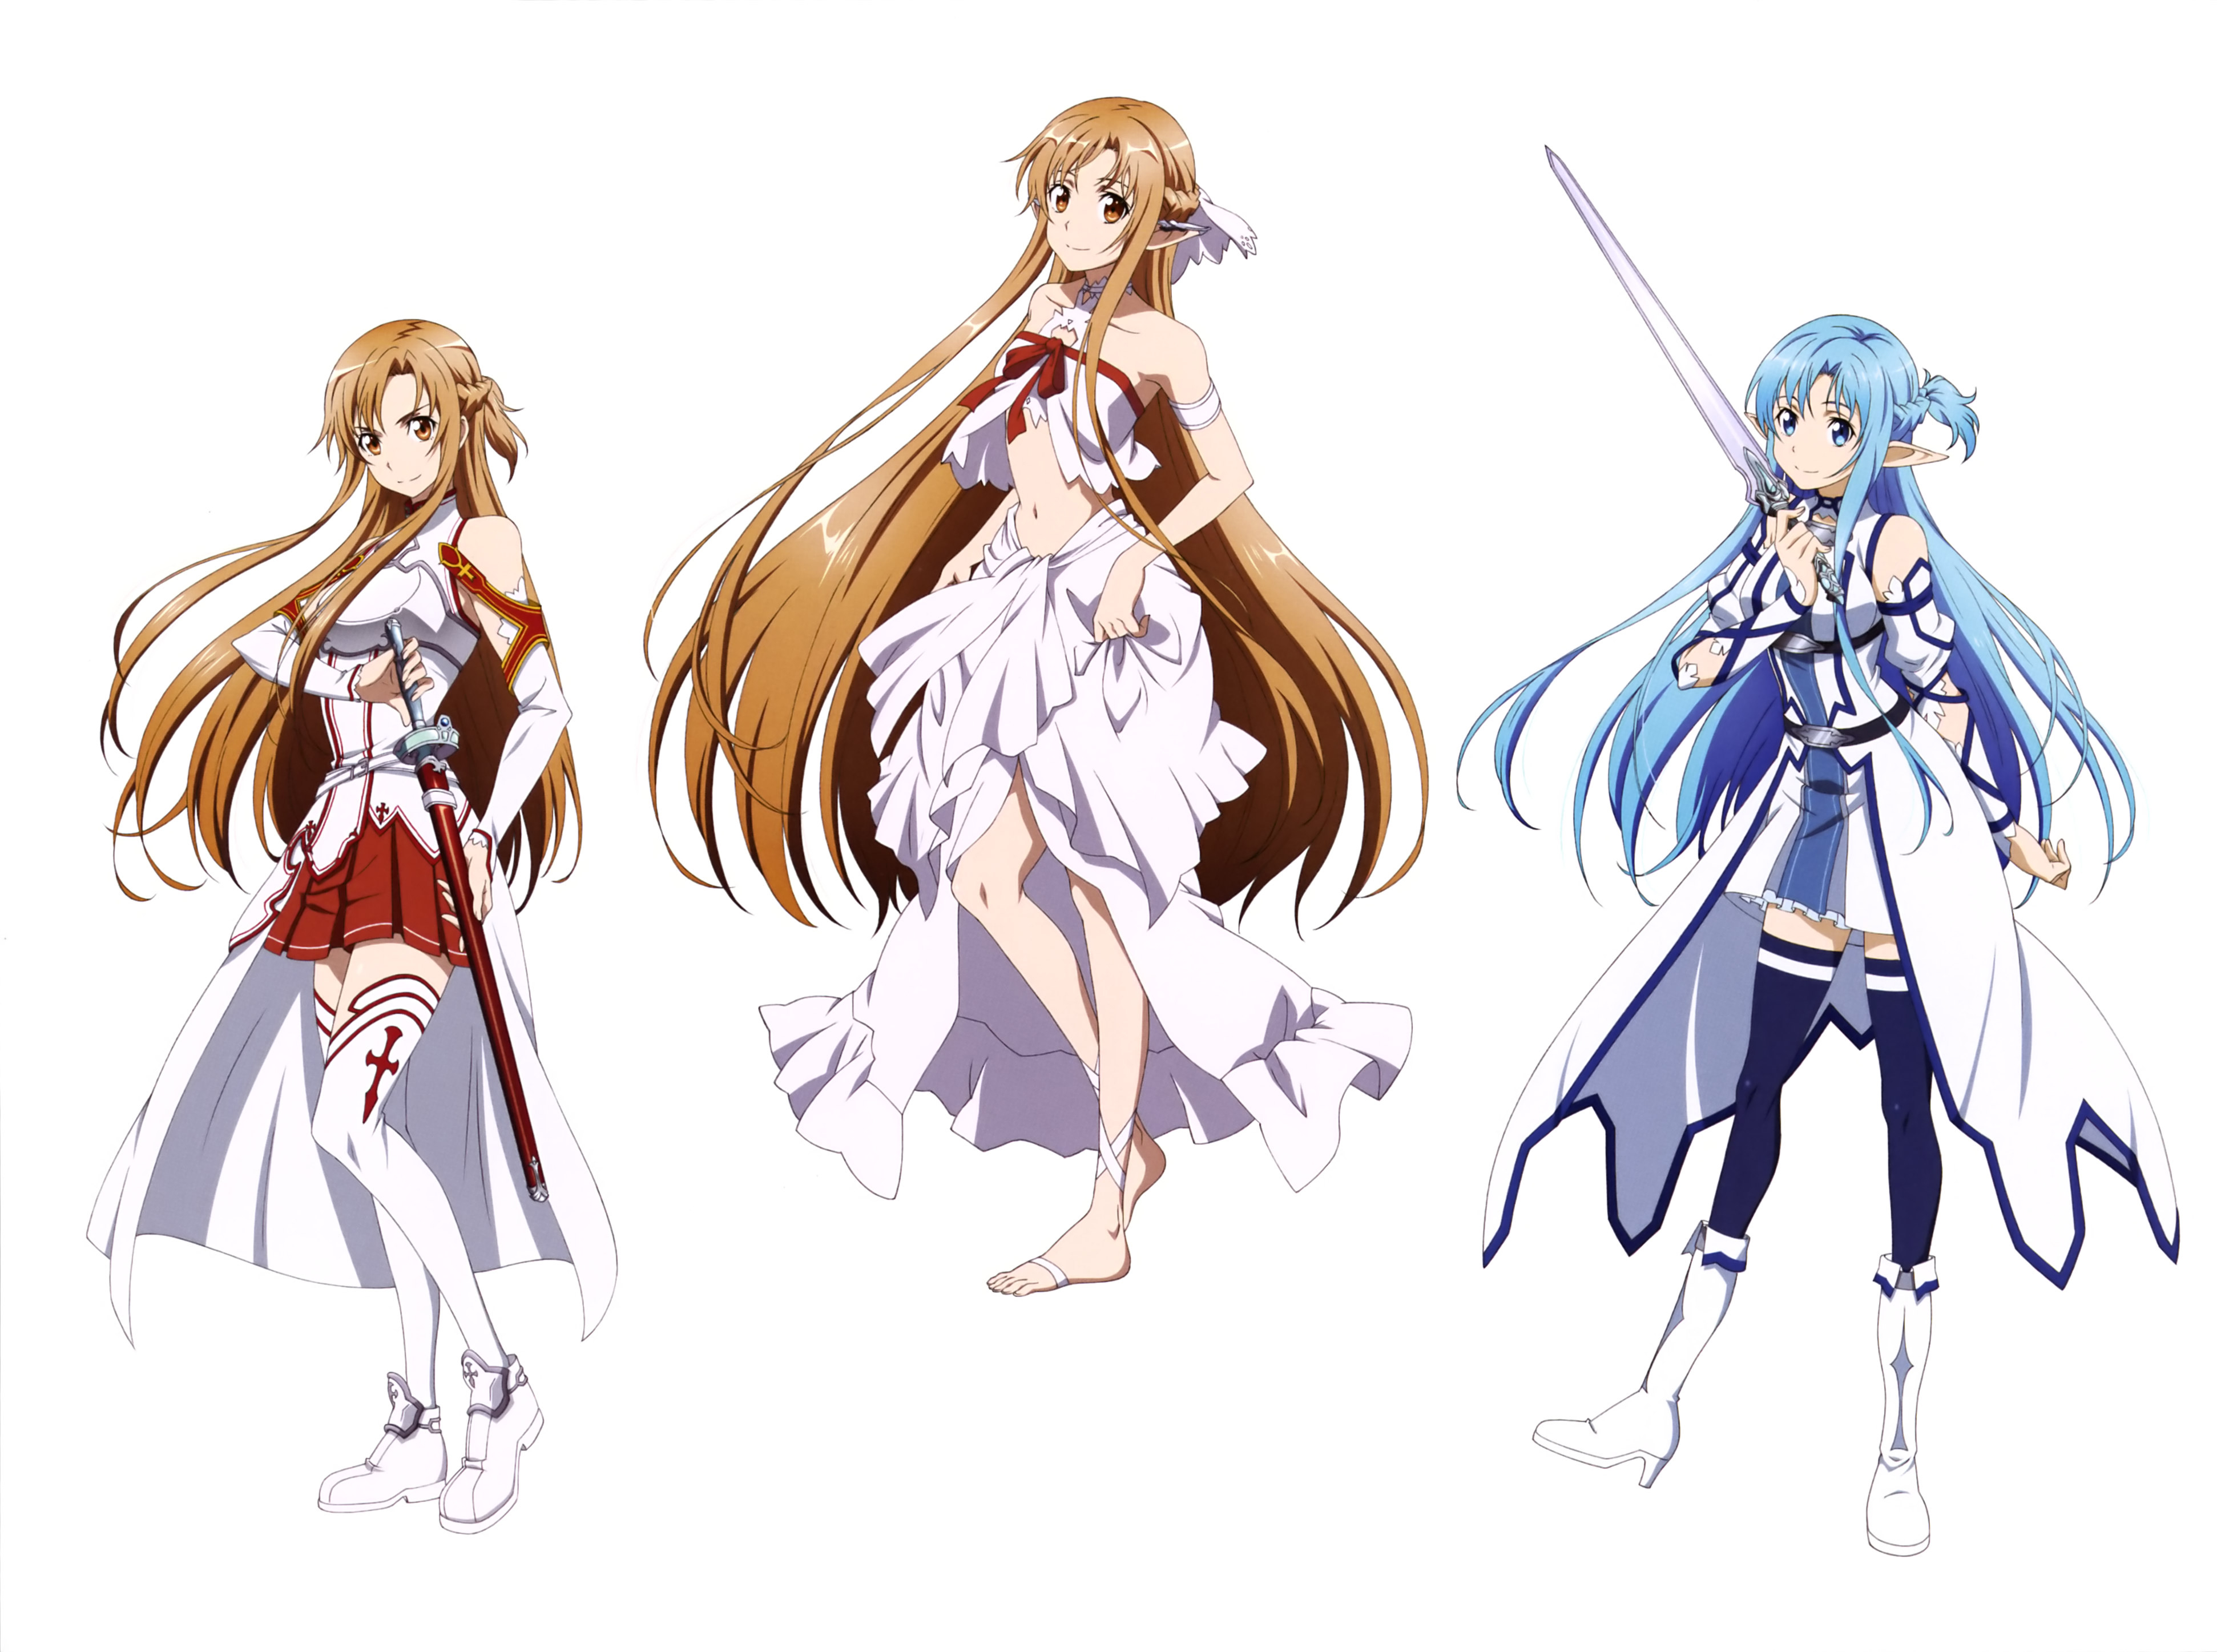 Descarga gratis la imagen Sword Art Online, Animado, Asuna Yuuki, Espada Arte En Línea Ii, Arte De Espada En Línea en el escritorio de tu PC